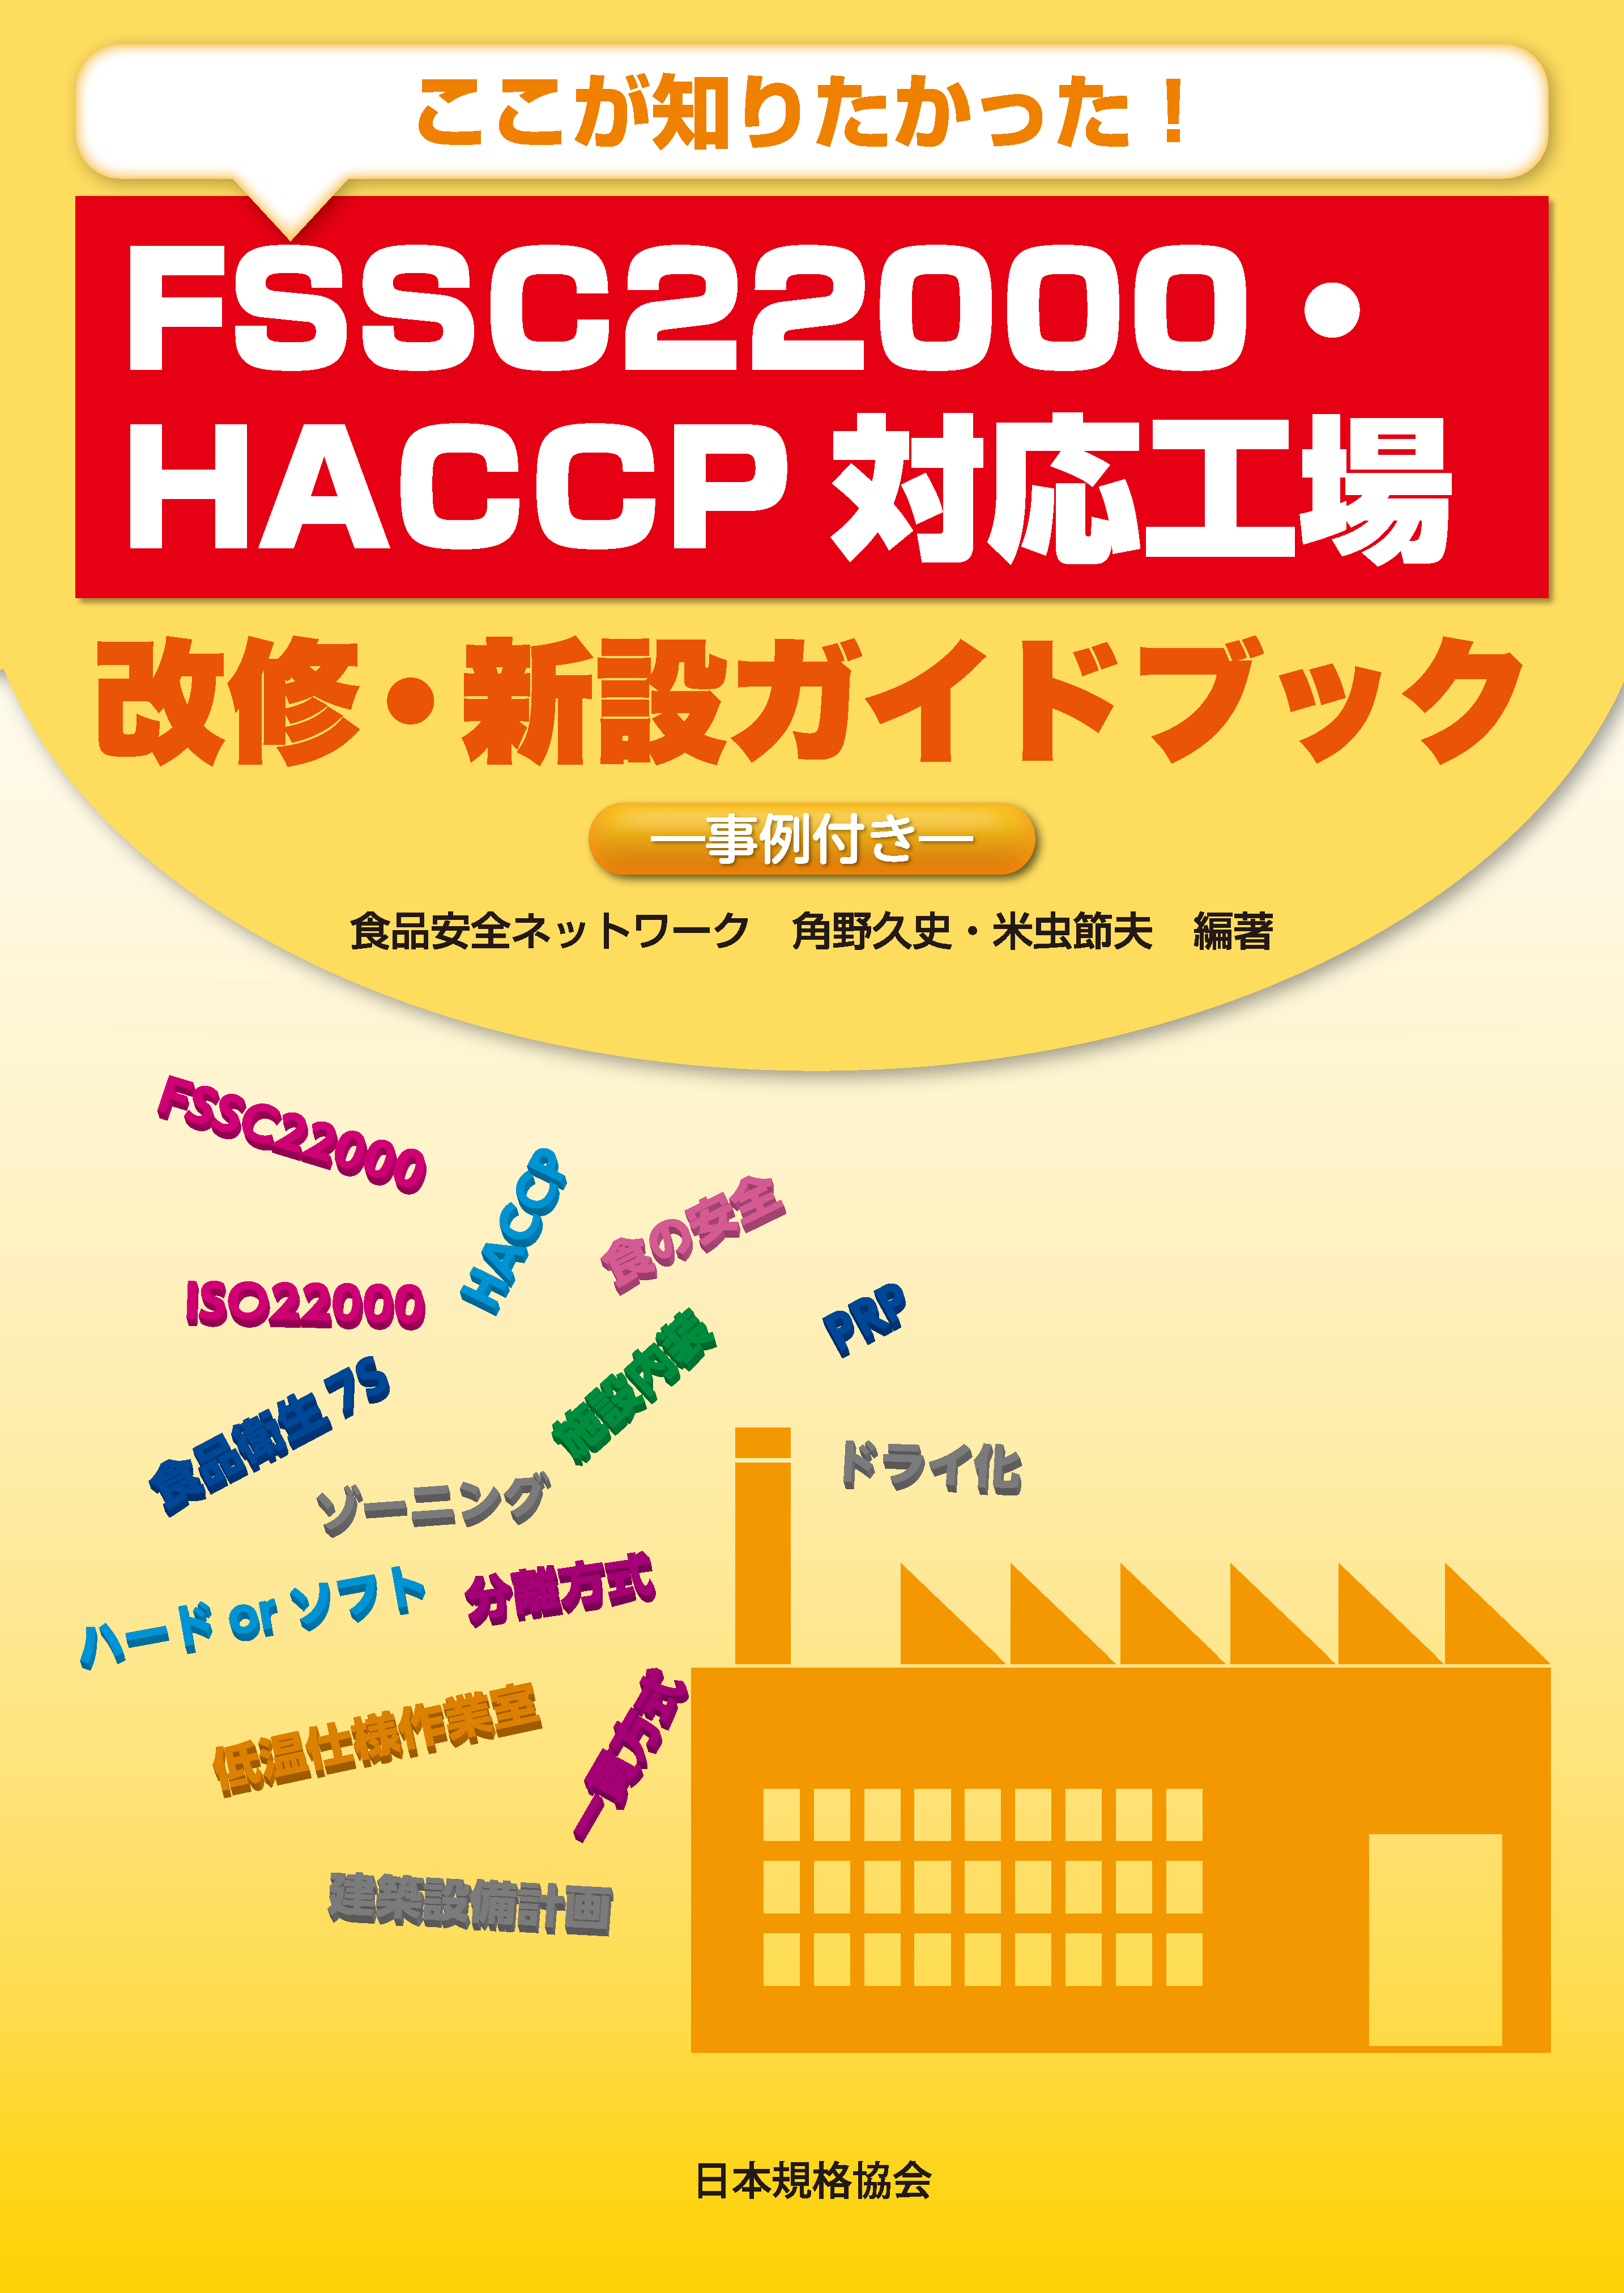 書籍「FSSC22000・HACCP対応工場 改修・新設ガイドブック」